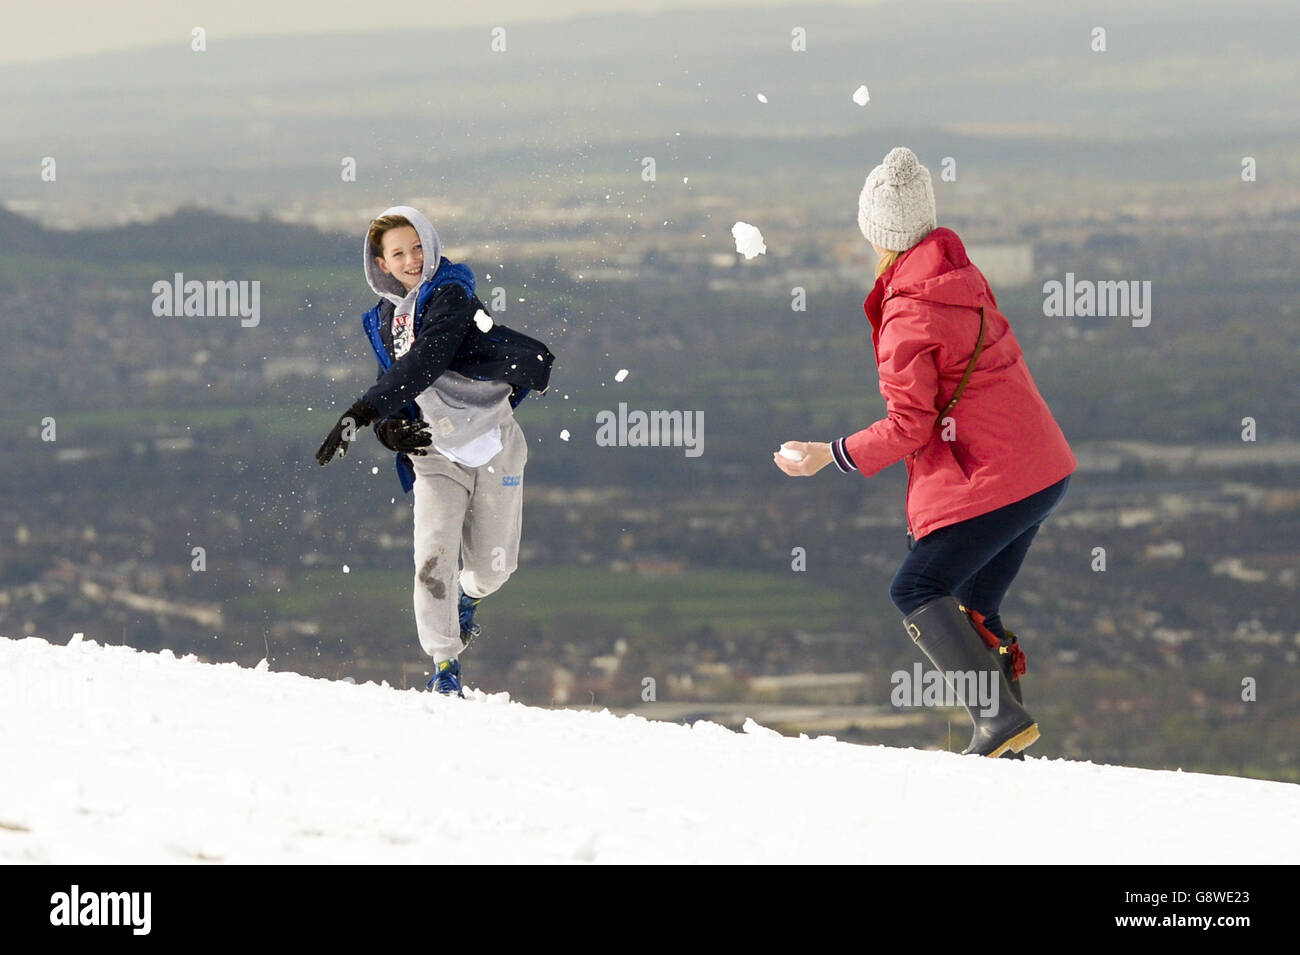 Die Menschen, die auf Cleeve Hill, Celtenham, im Schnee spielten, brachten als kalter Einbruch ein plötzliches Ende des warmen Frühlings, als Teile Großbritanniens zu Schnee erwachten. Stockfoto